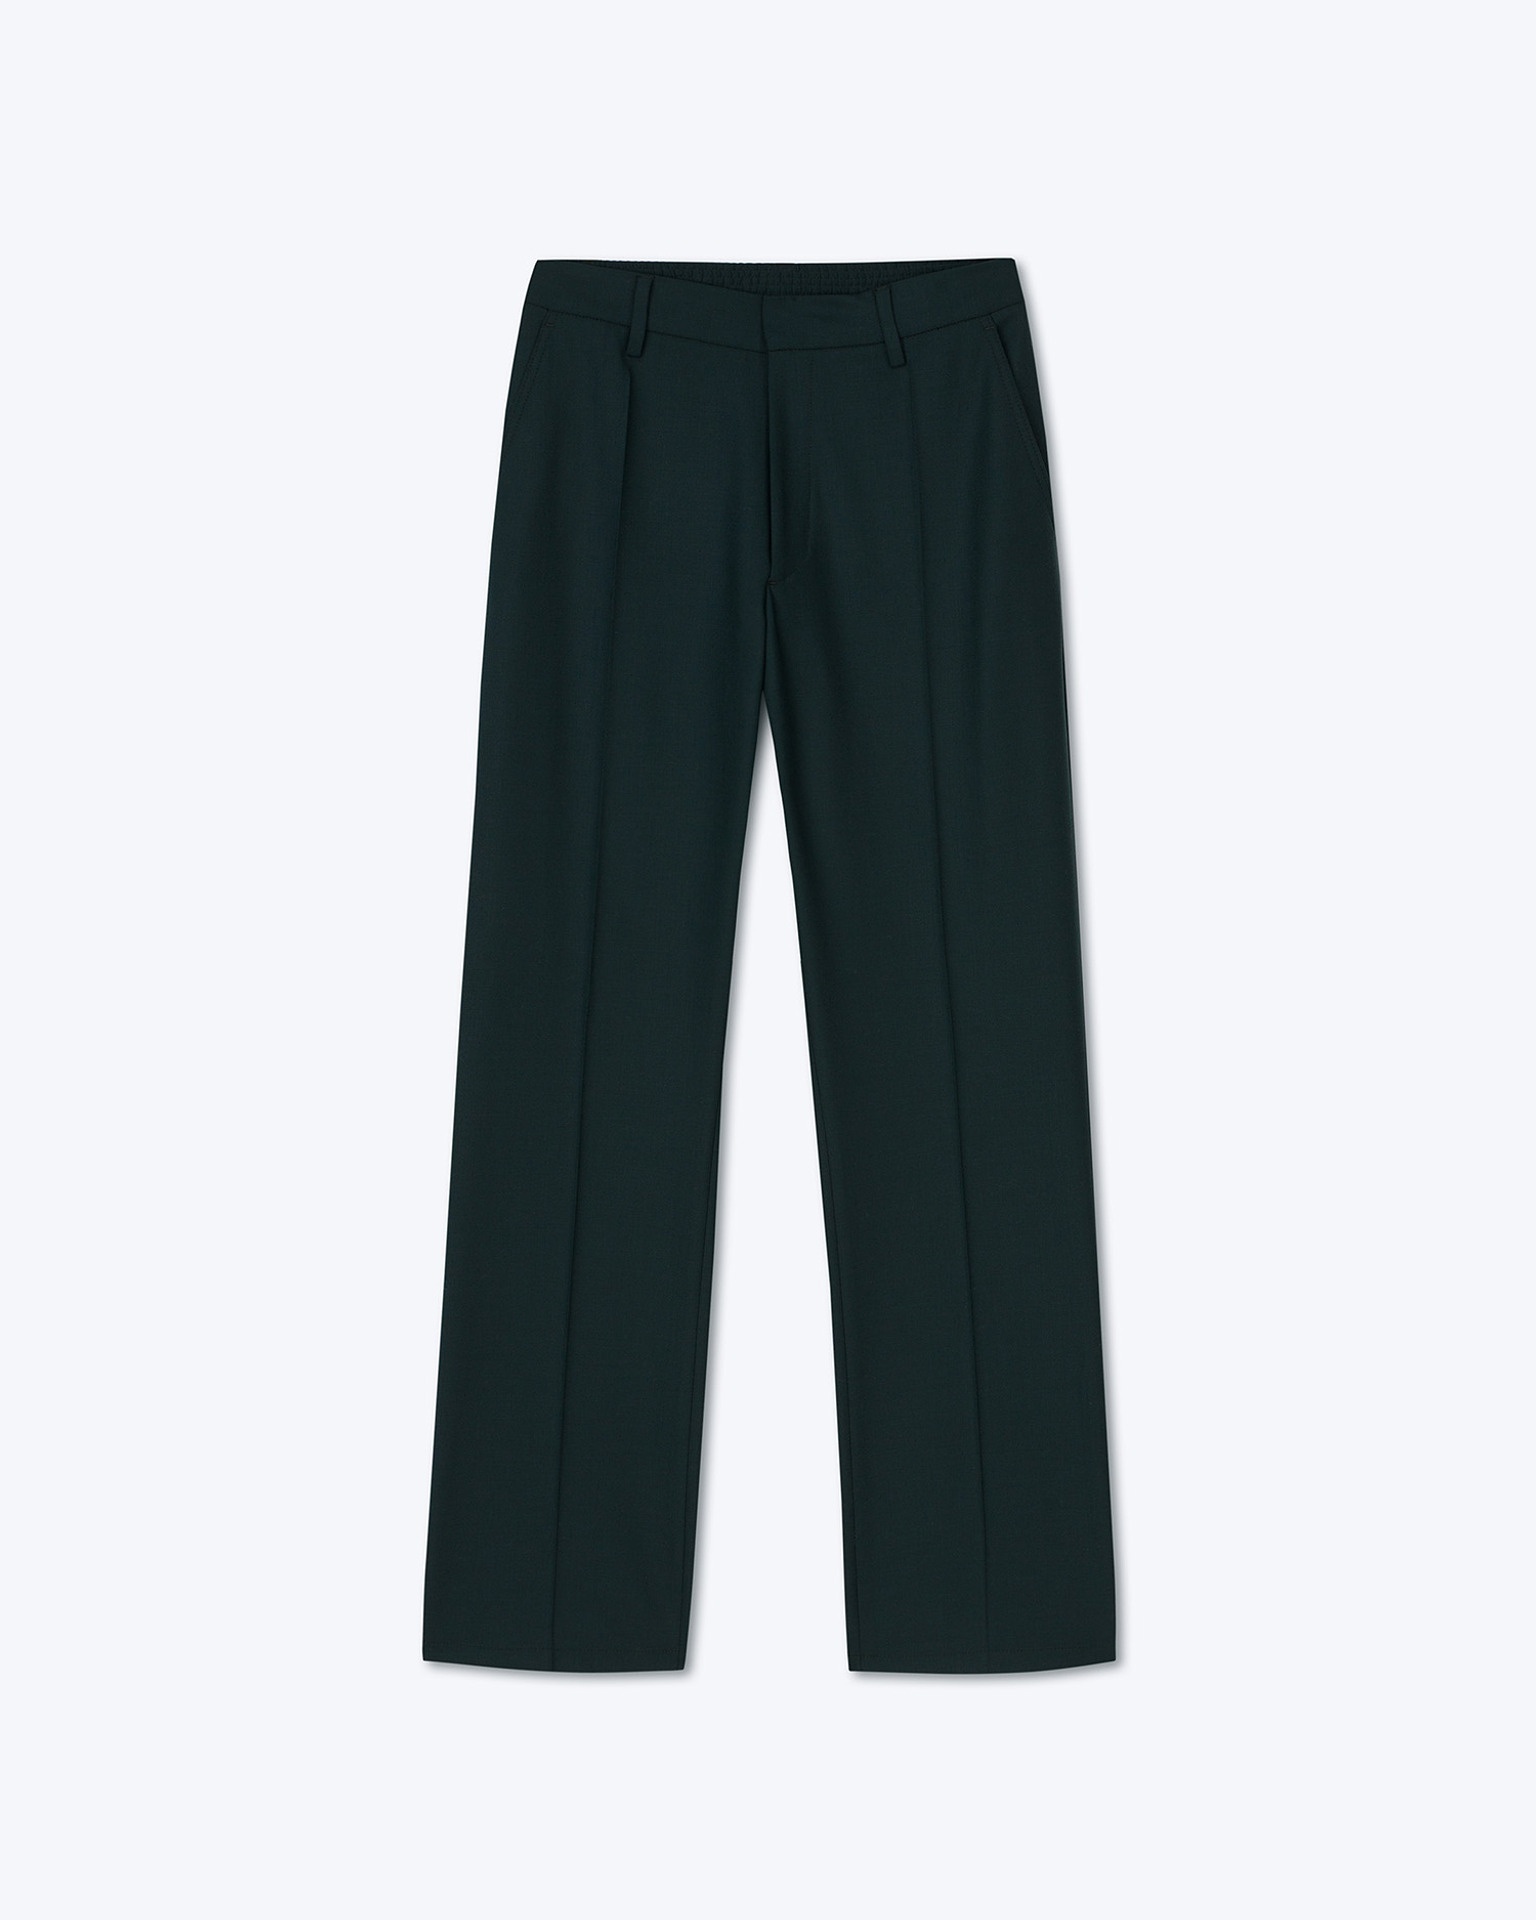 DIMAS - Wool-blend pants - Pine green - 1